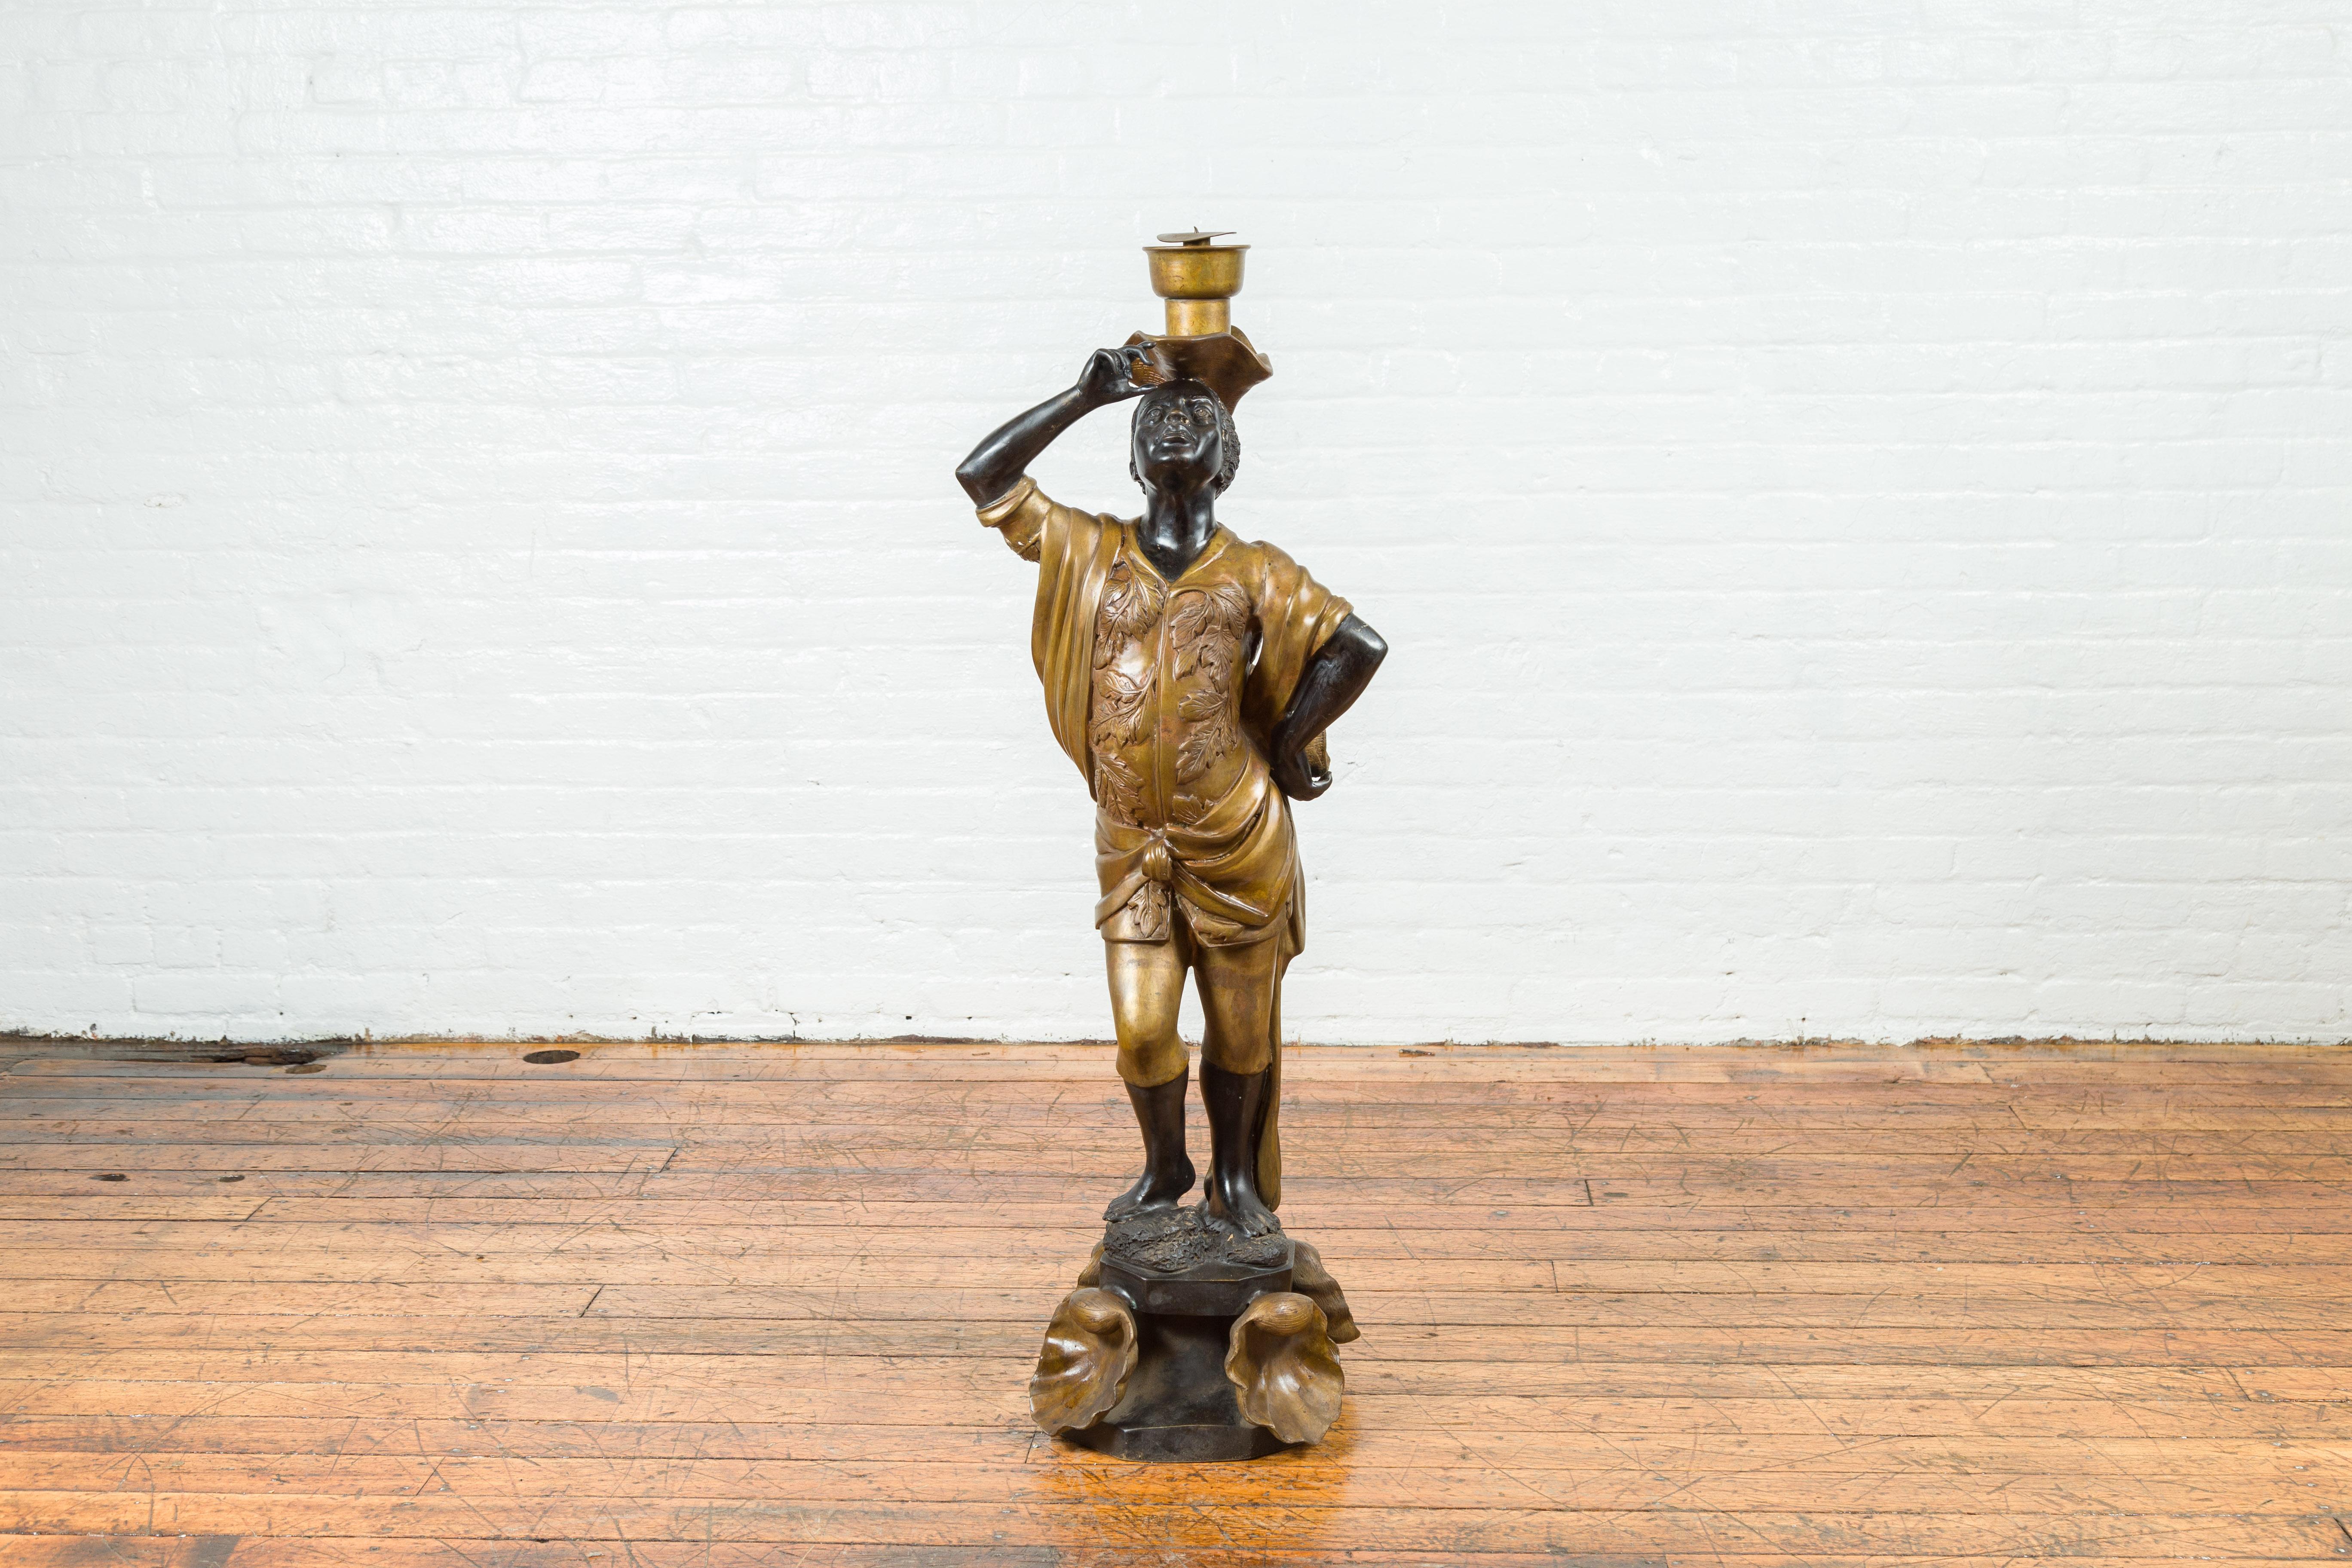 Statuette bougeoir vintage en bronze, patiné noir et or, sur socle en coquillage. Créé au cours du 20ème siècle avec la technique traditionnelle de la cire perdue qui permet une grande précision et finesse dans les détails, ce bougeoir attire notre